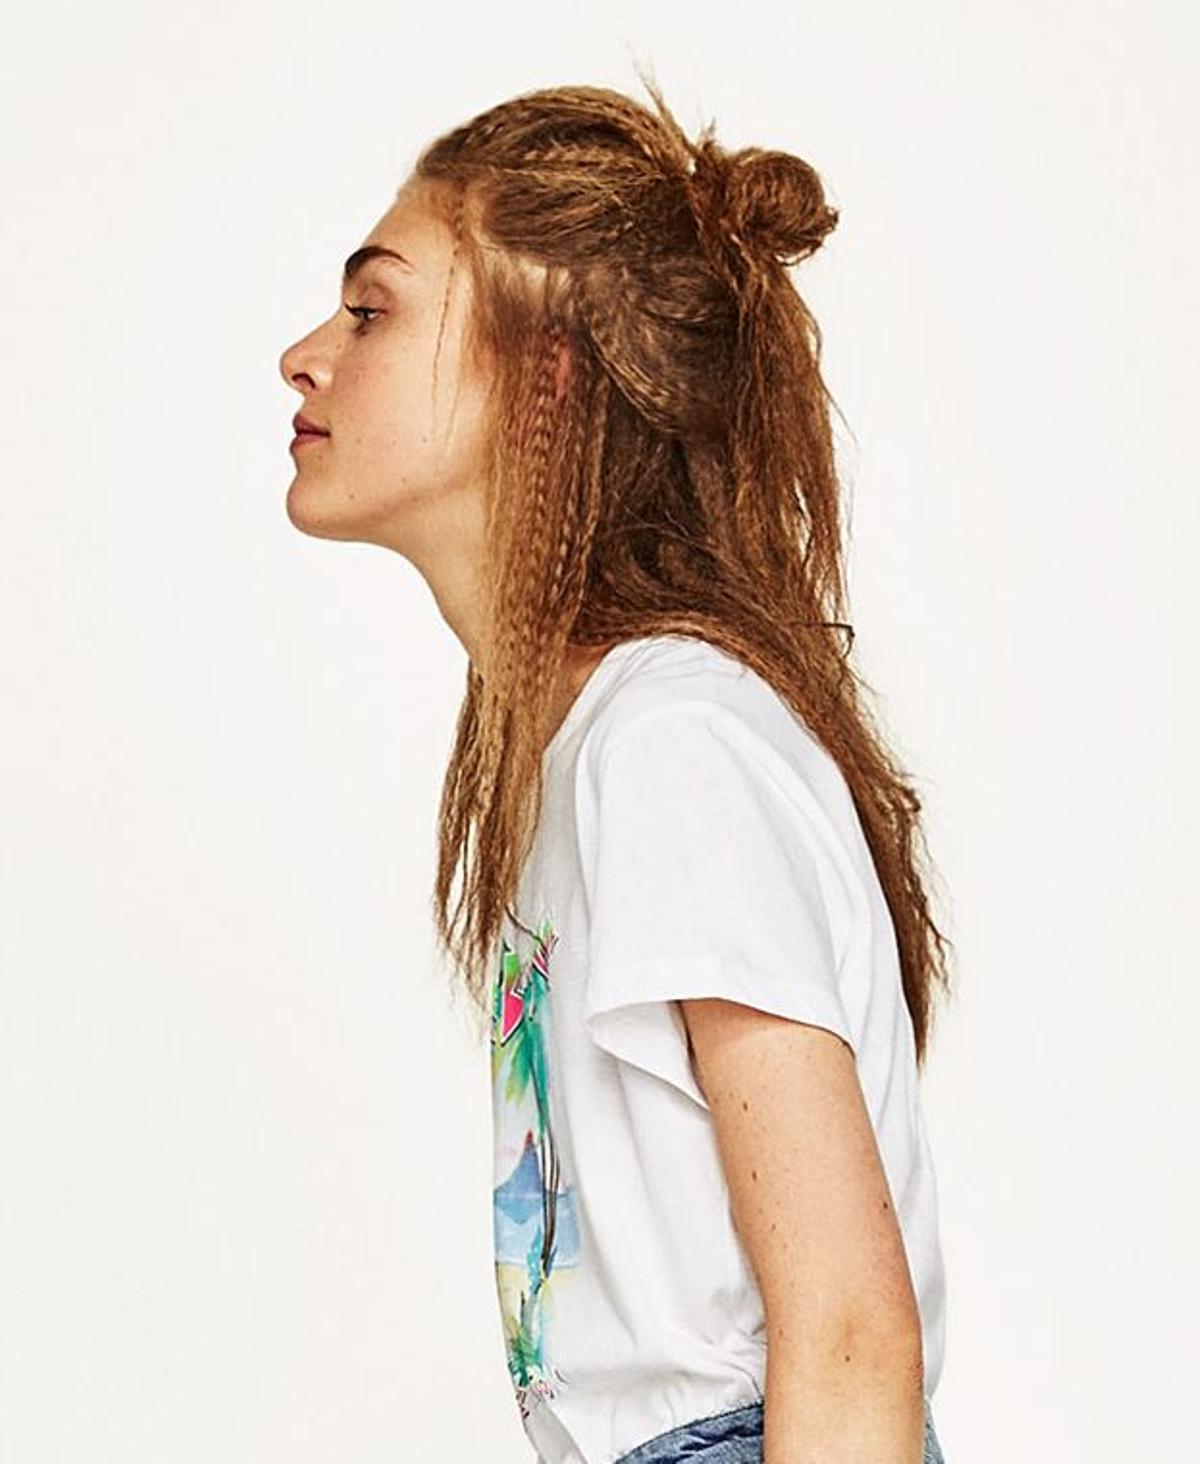 Crimping hair, la nueva tendencia según Zara (7)